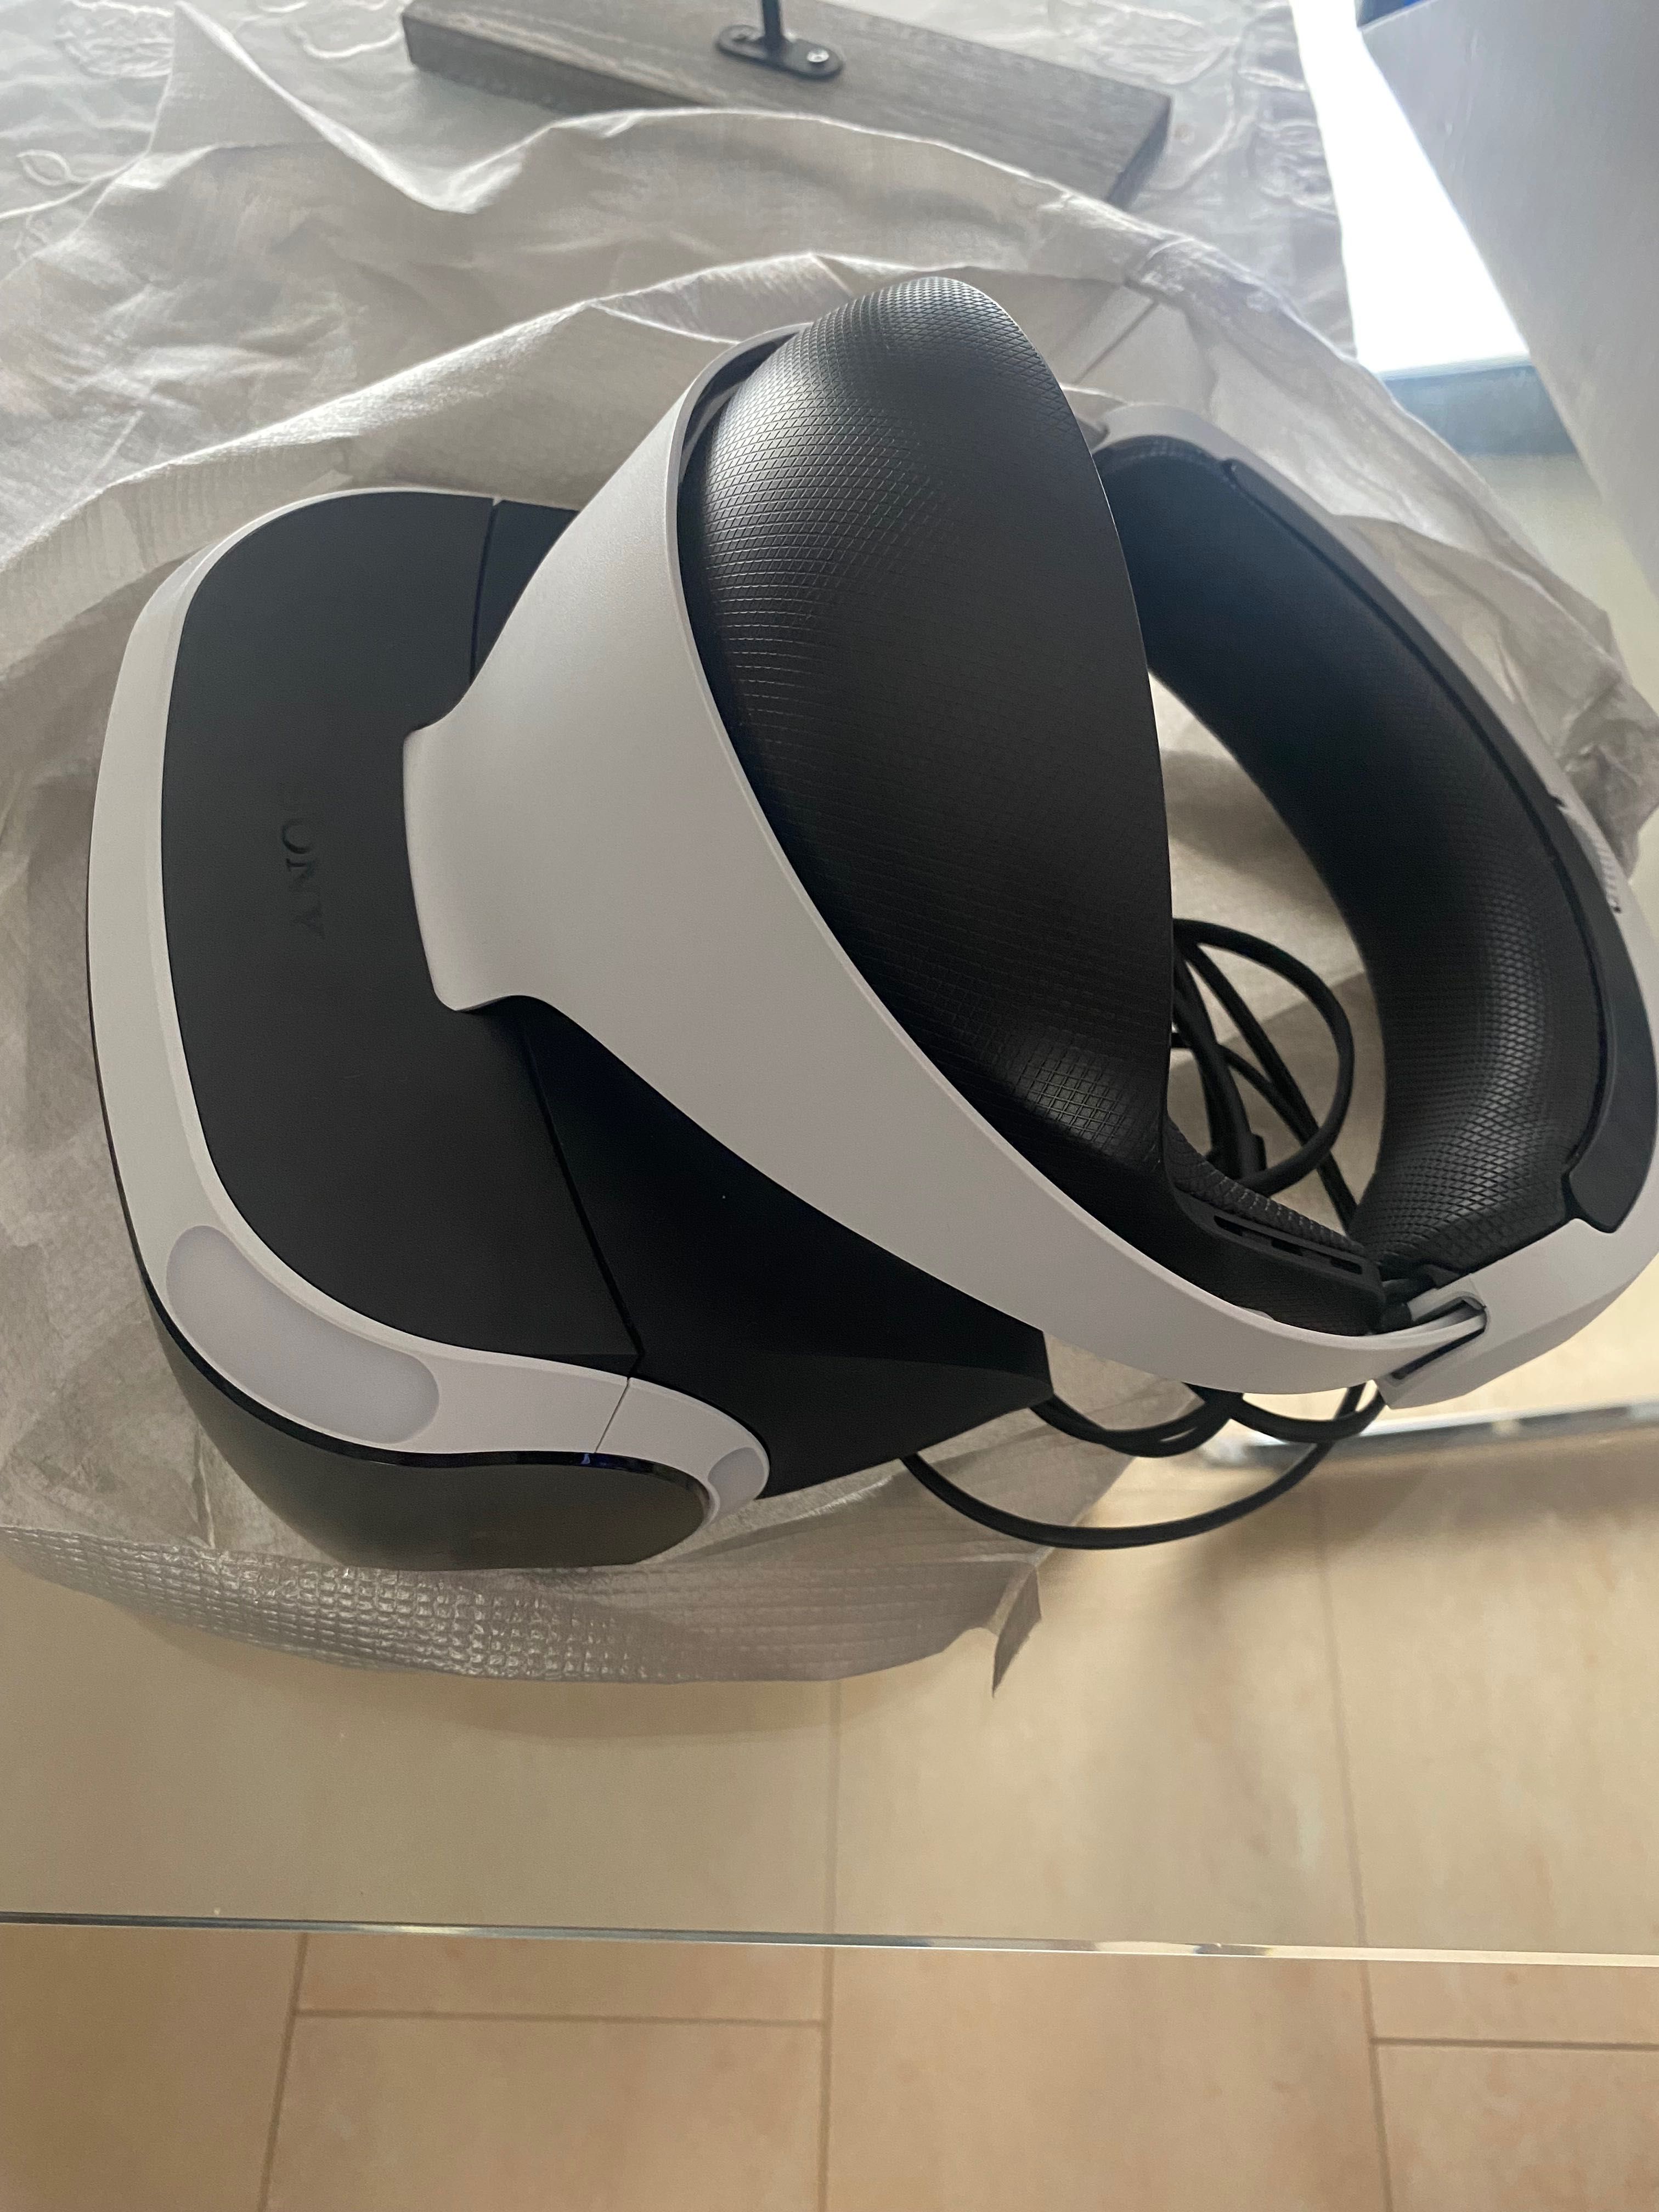 Sony PlayStation VR + camera